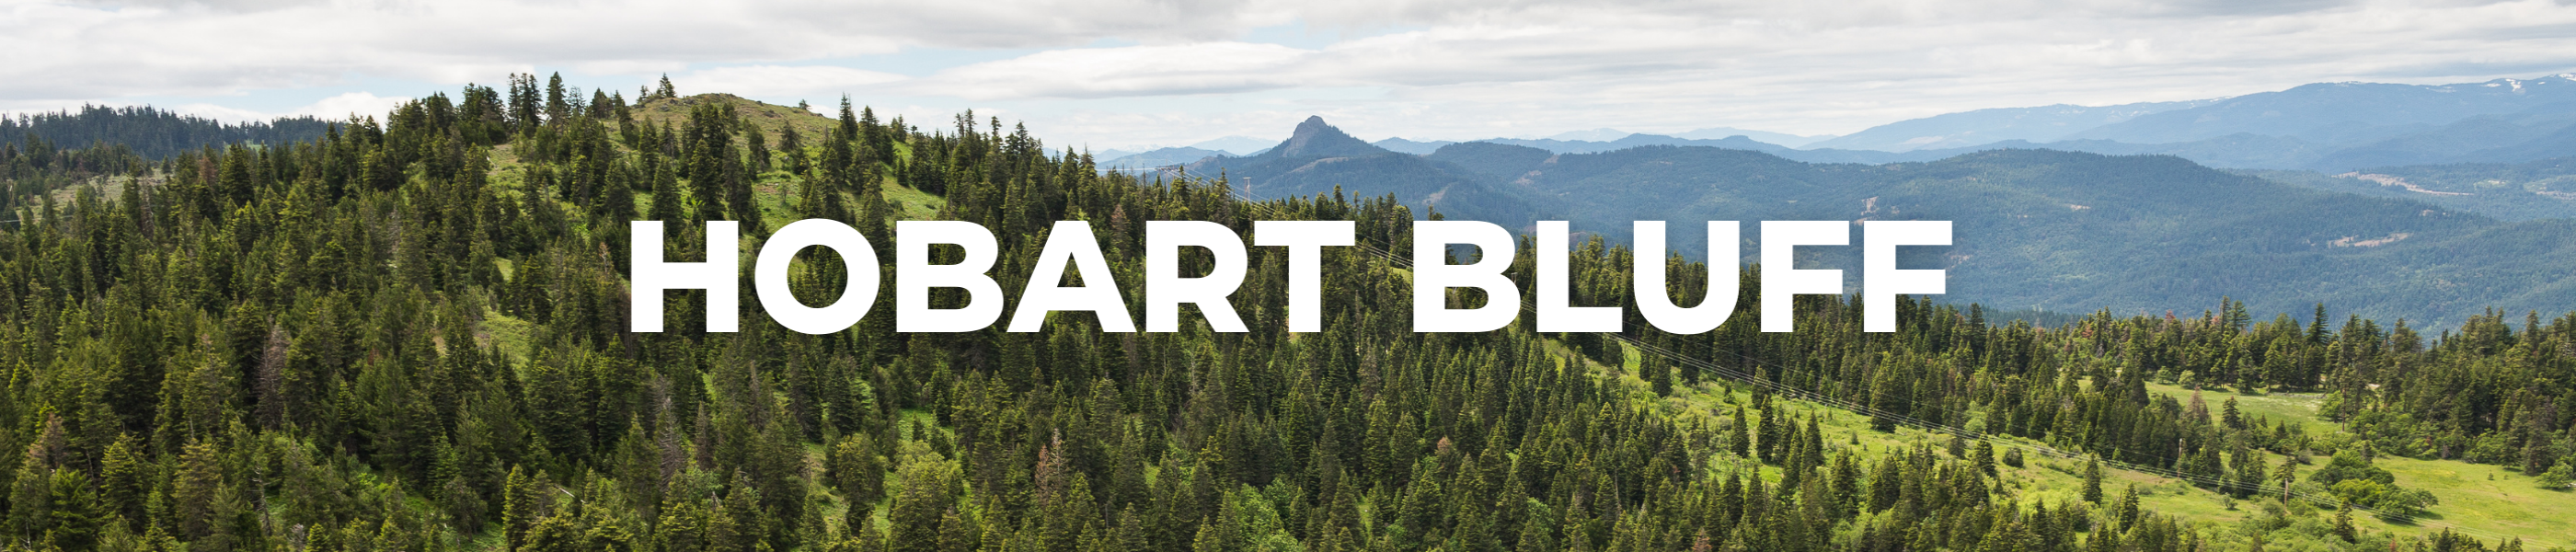 Hobart Bluff, Medford Hiking and Biking, hike, bike, trails, path, trees, forest, 